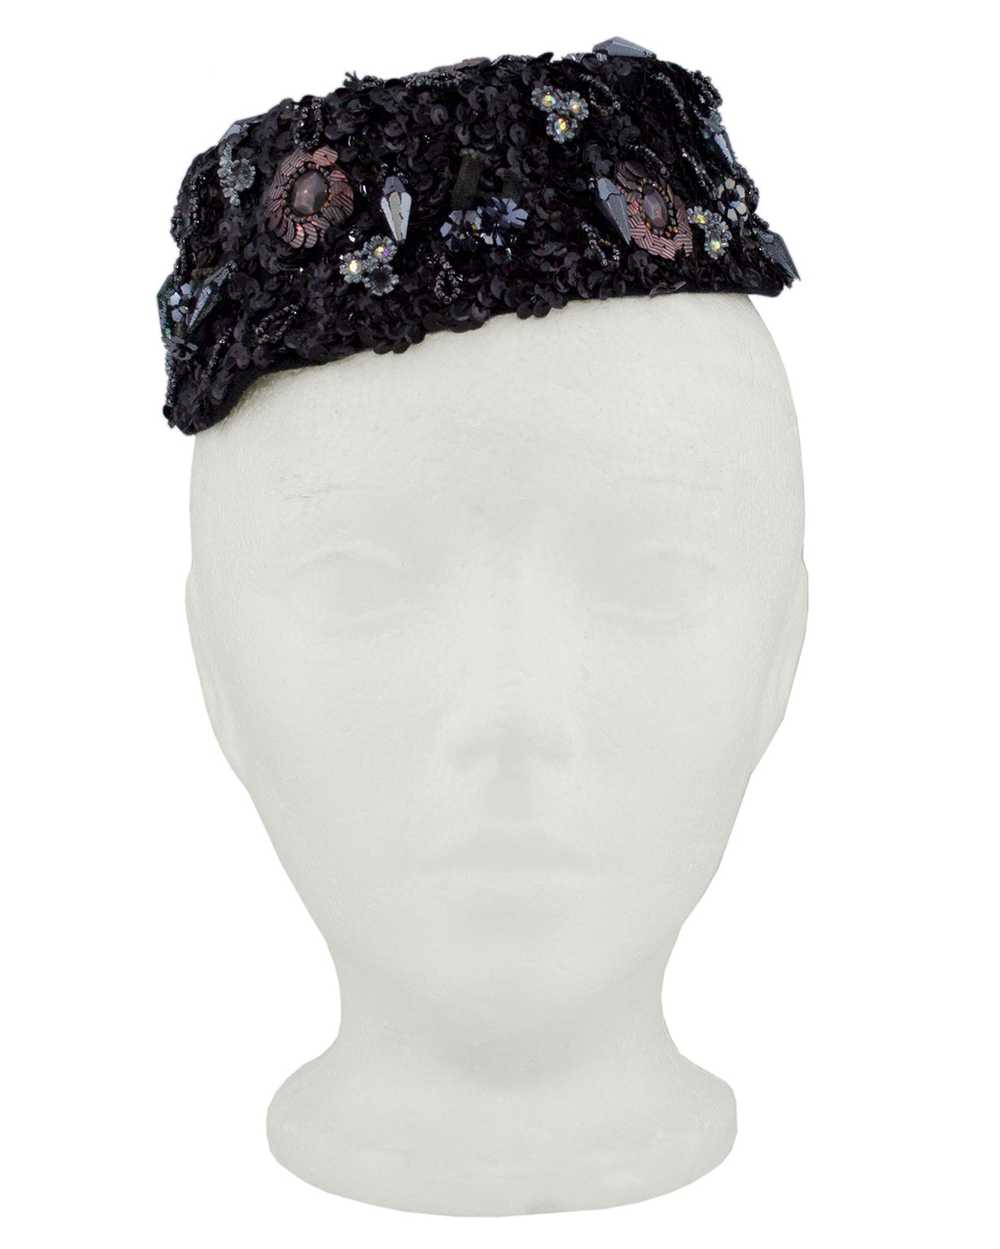 Schiaparelli Black Sequin & Beaded Evening Hat - image 1